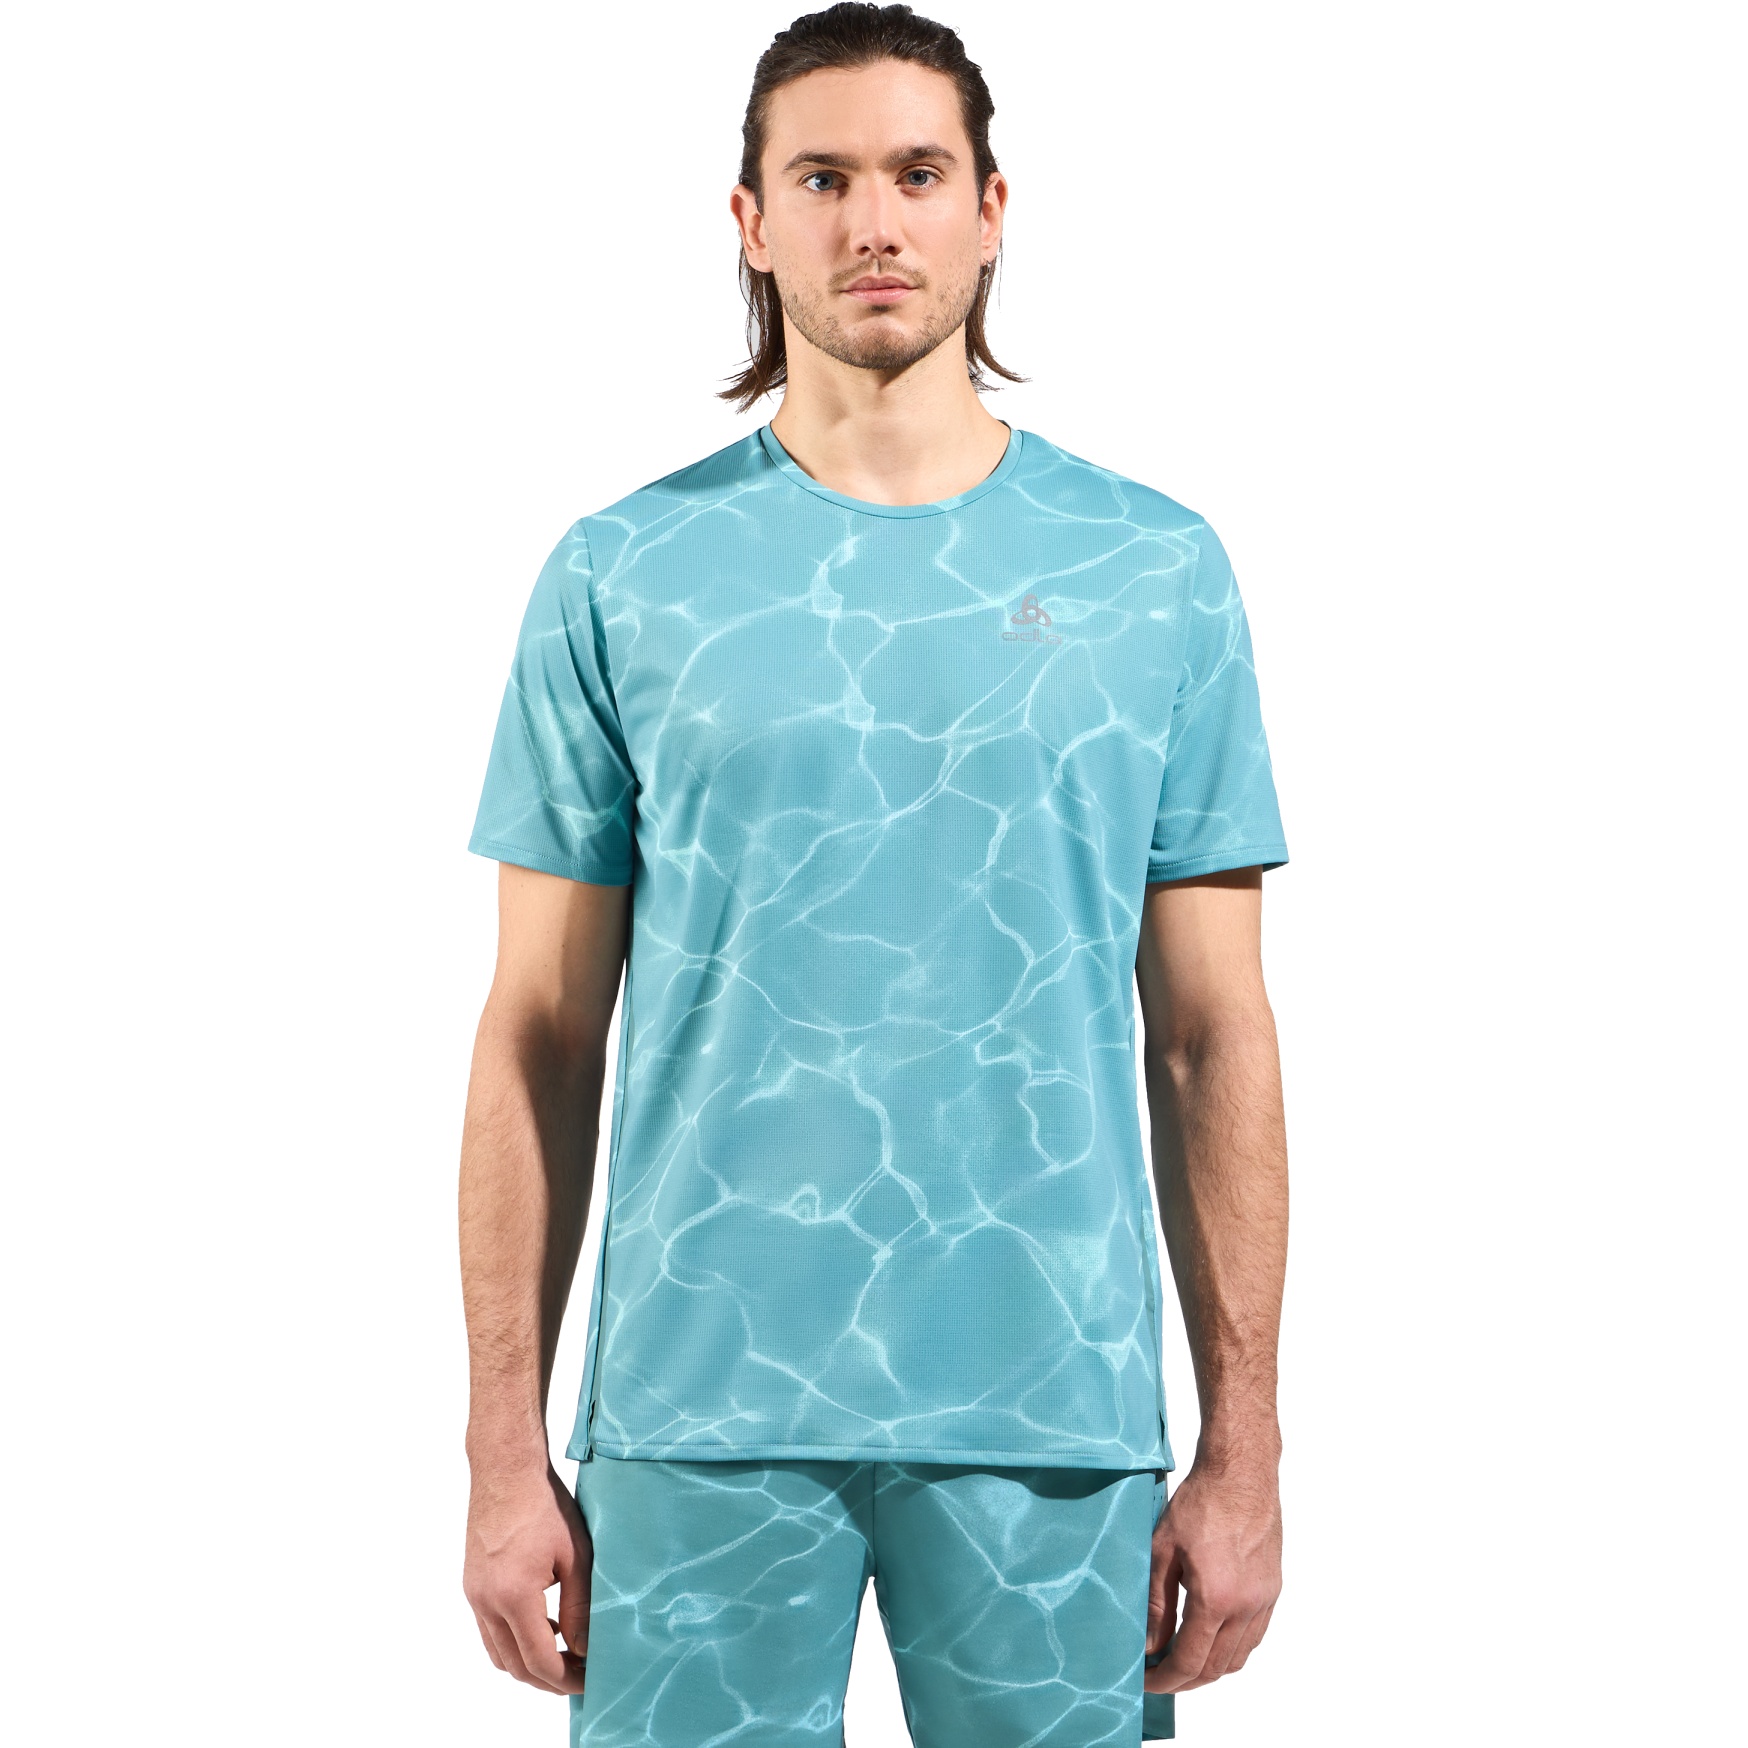 Produktbild von Odlo Zeroweight Chill-Tec Laufshirt mit Print Herren - arctic